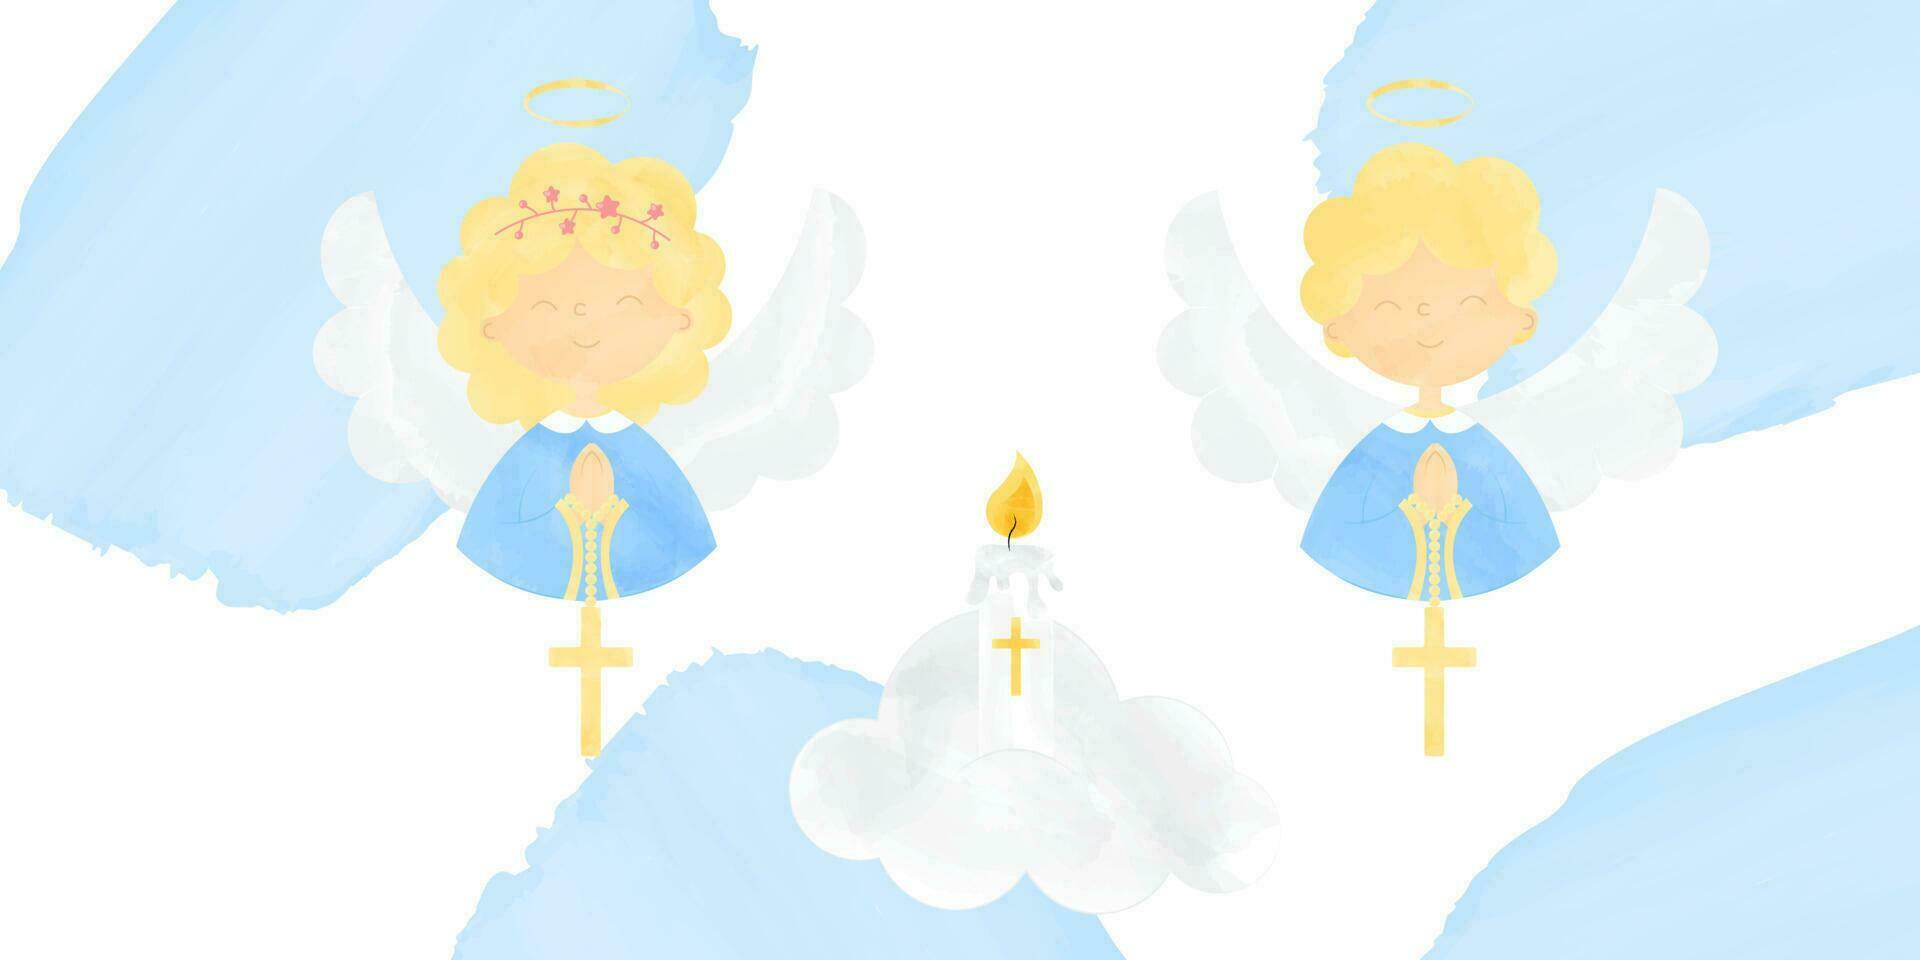 söt änglar flicka och pojke i festlig klädsel med vikta händer på de bröst för bön och en korsa hängande på de vikta händer moln och ljus vektor illustration baner för dop i vattenfärg stil